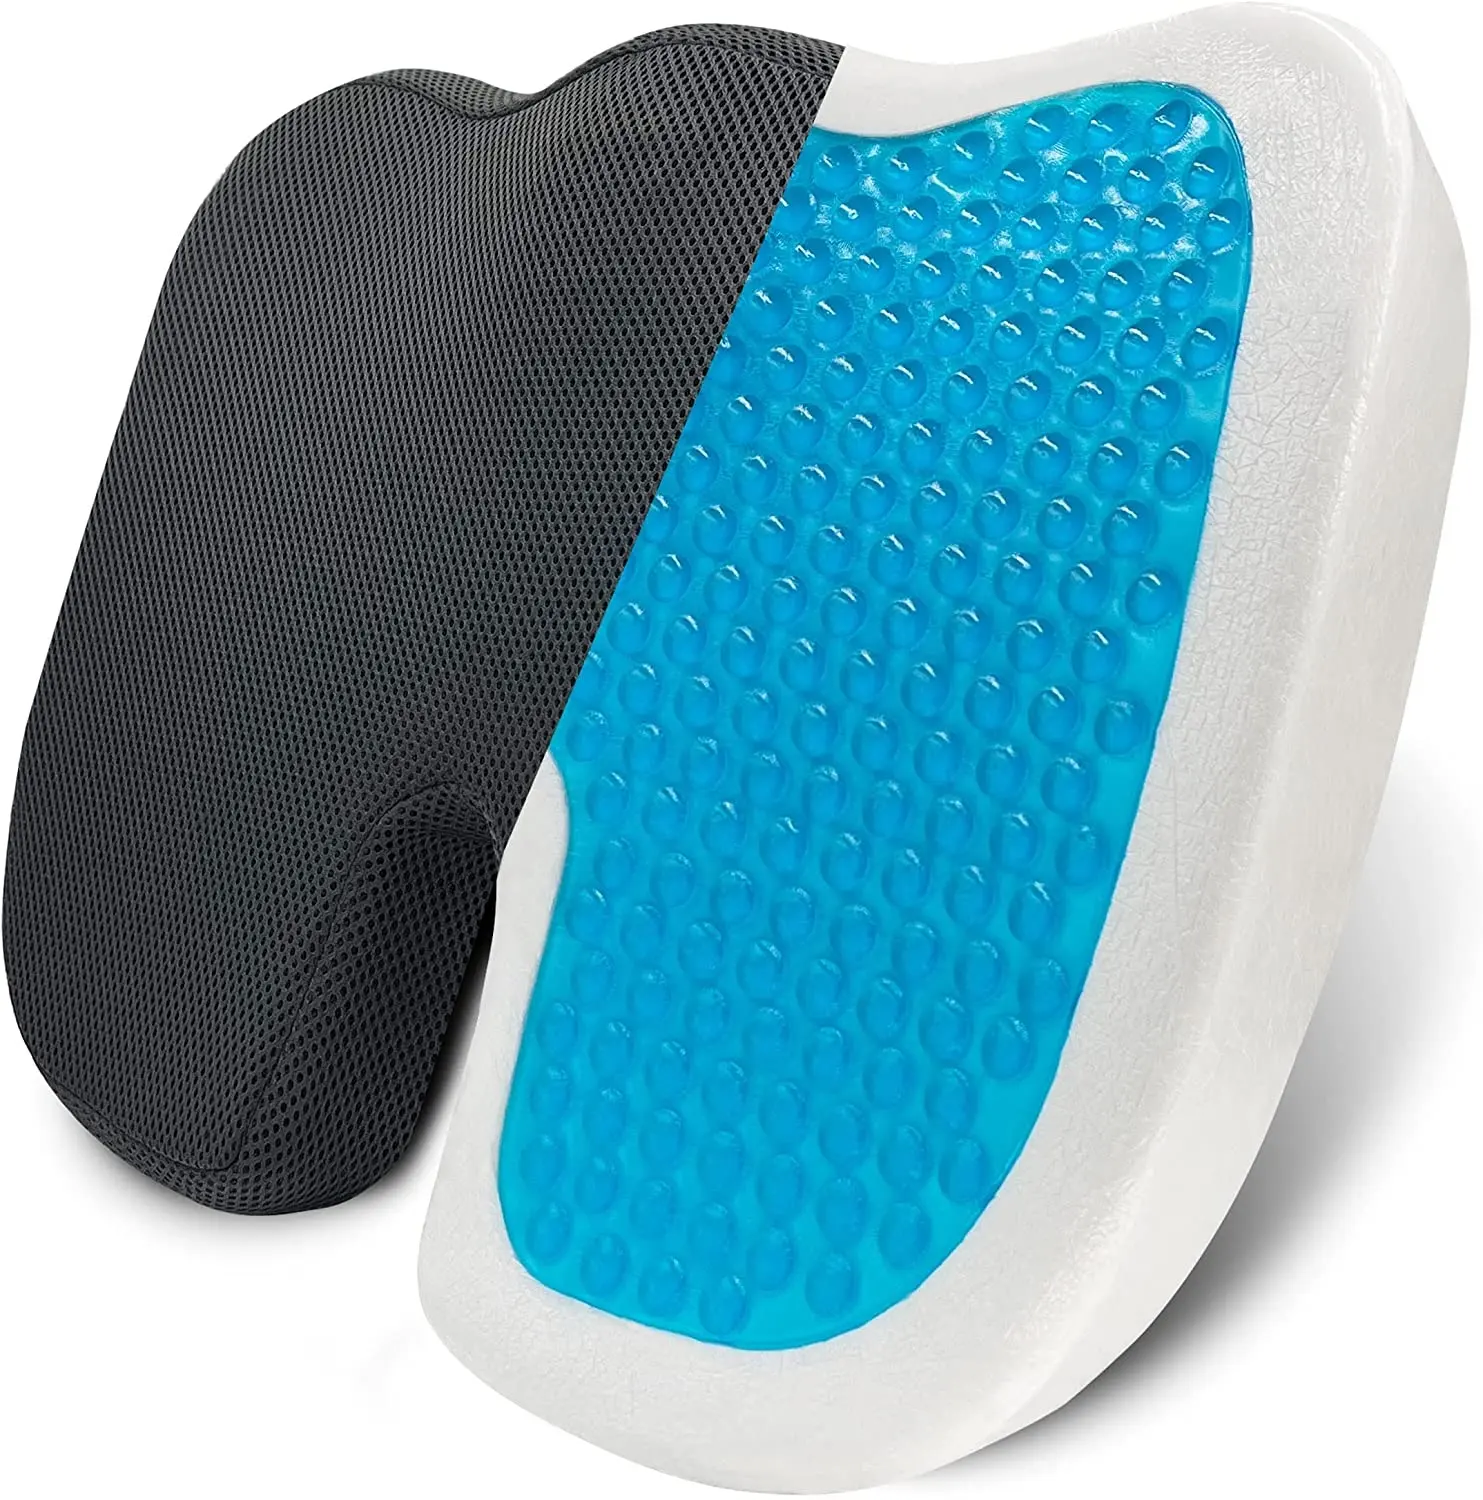 Gel Enhanced Seat Cushion Non-Slip Orthopedic Memory Foam Coccyx seat Cushion for Tailbone Pain Office Chair Seat car Cushion